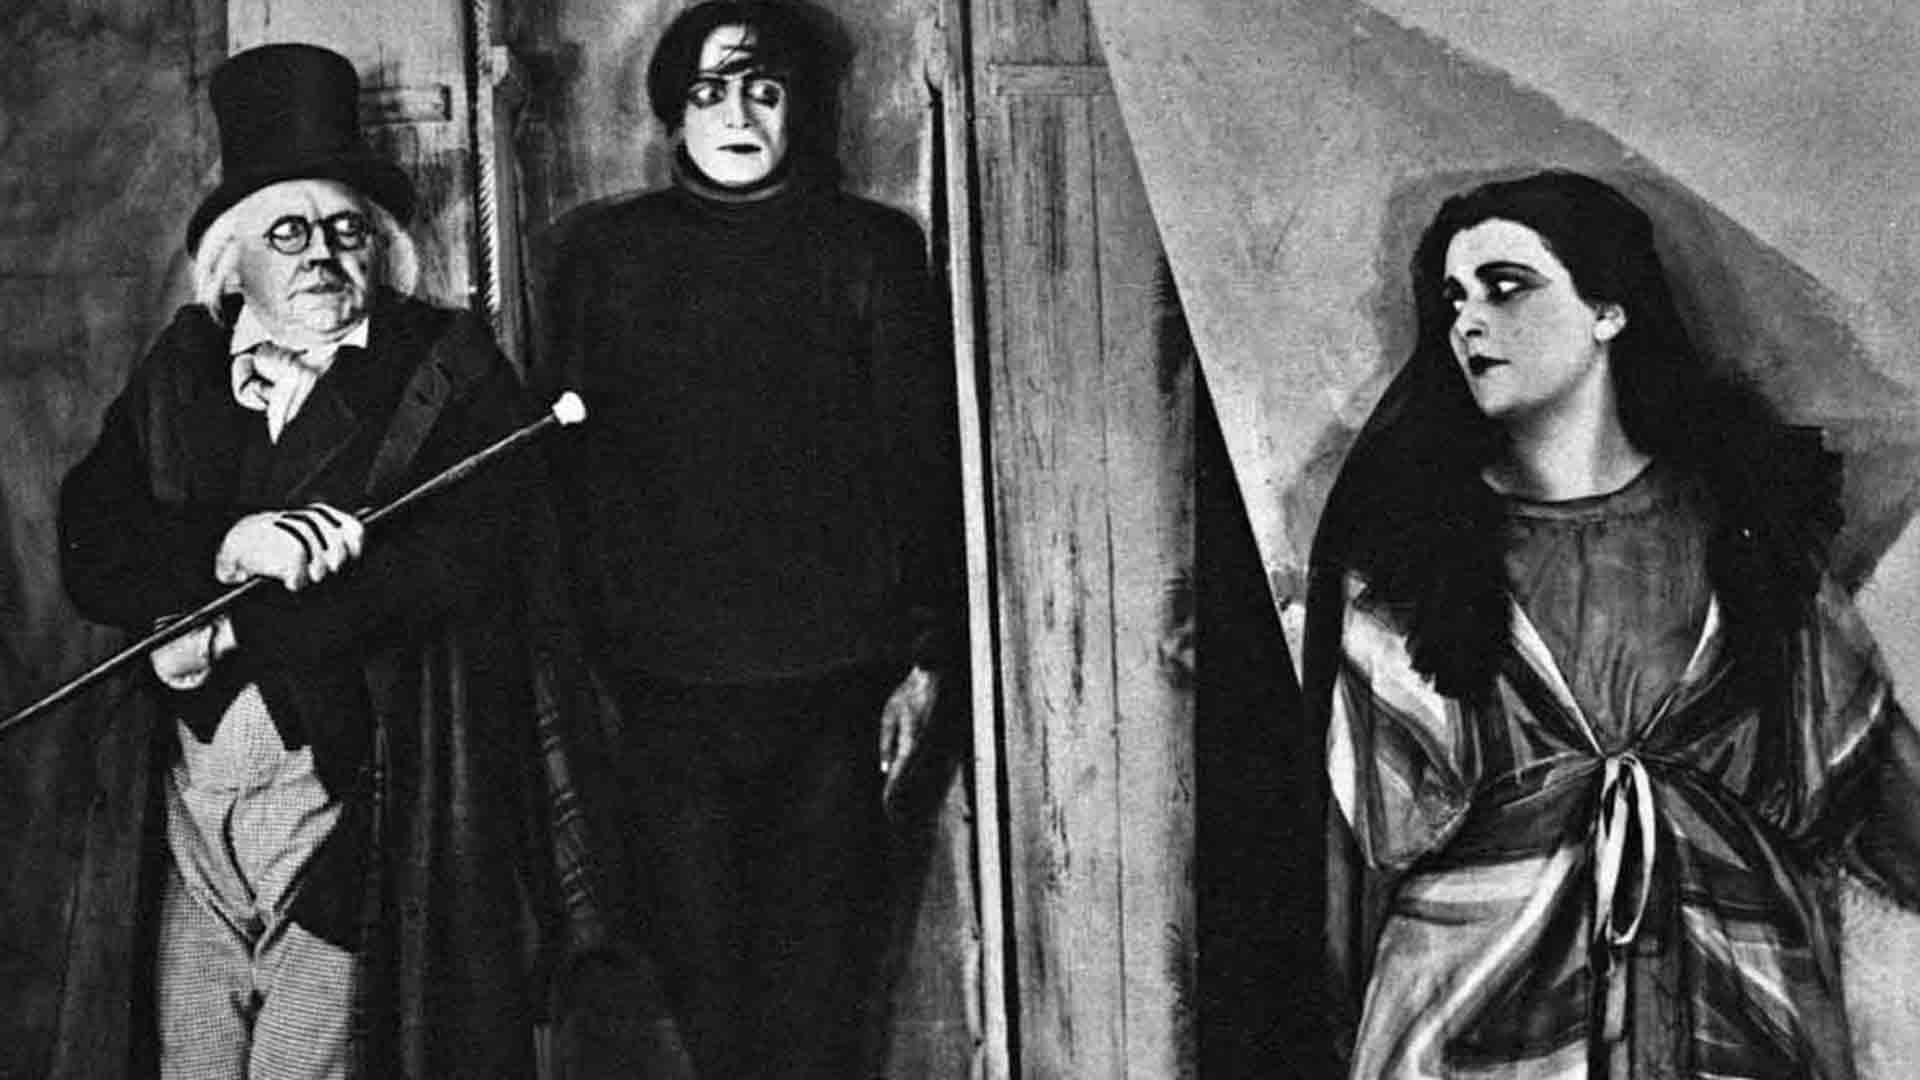 بازیگران اصلی فیلم The Cabinet of Dr. Caligari با چشمانی باز و ترسیده